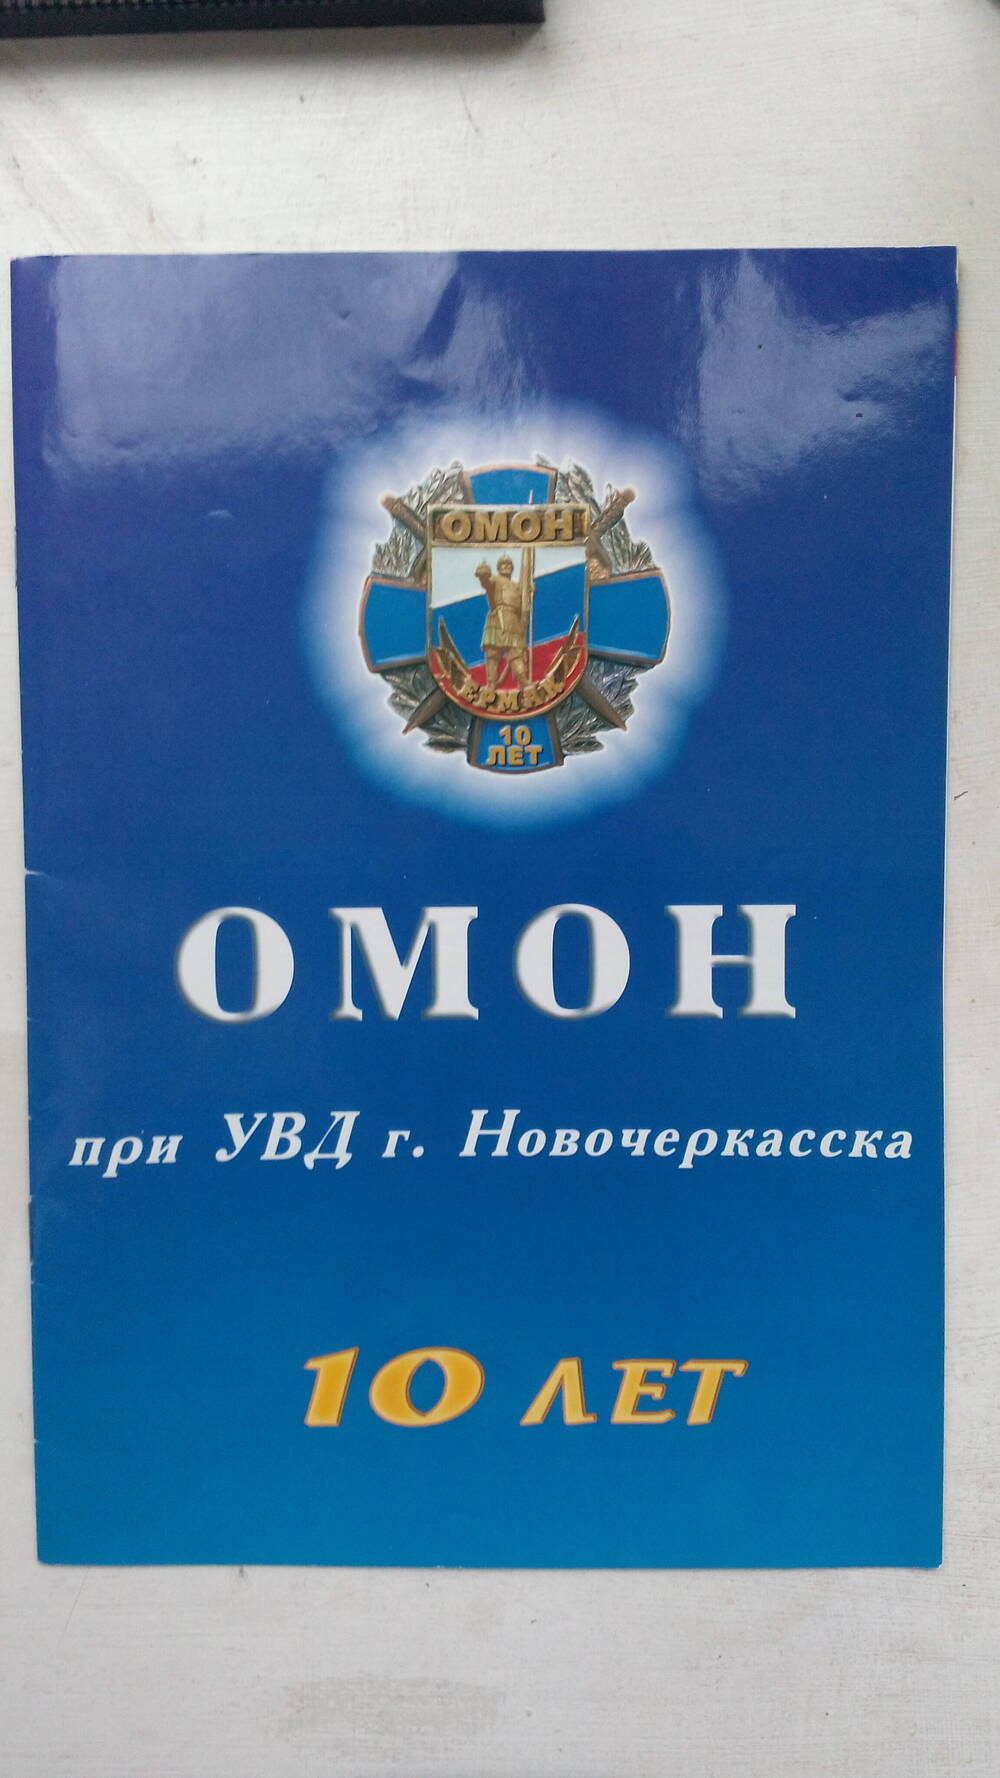 Буклет ОМОН при УВД г. Новочеркасска. 10 лет, г. Новочеркасск, 2003 г., 16 с.